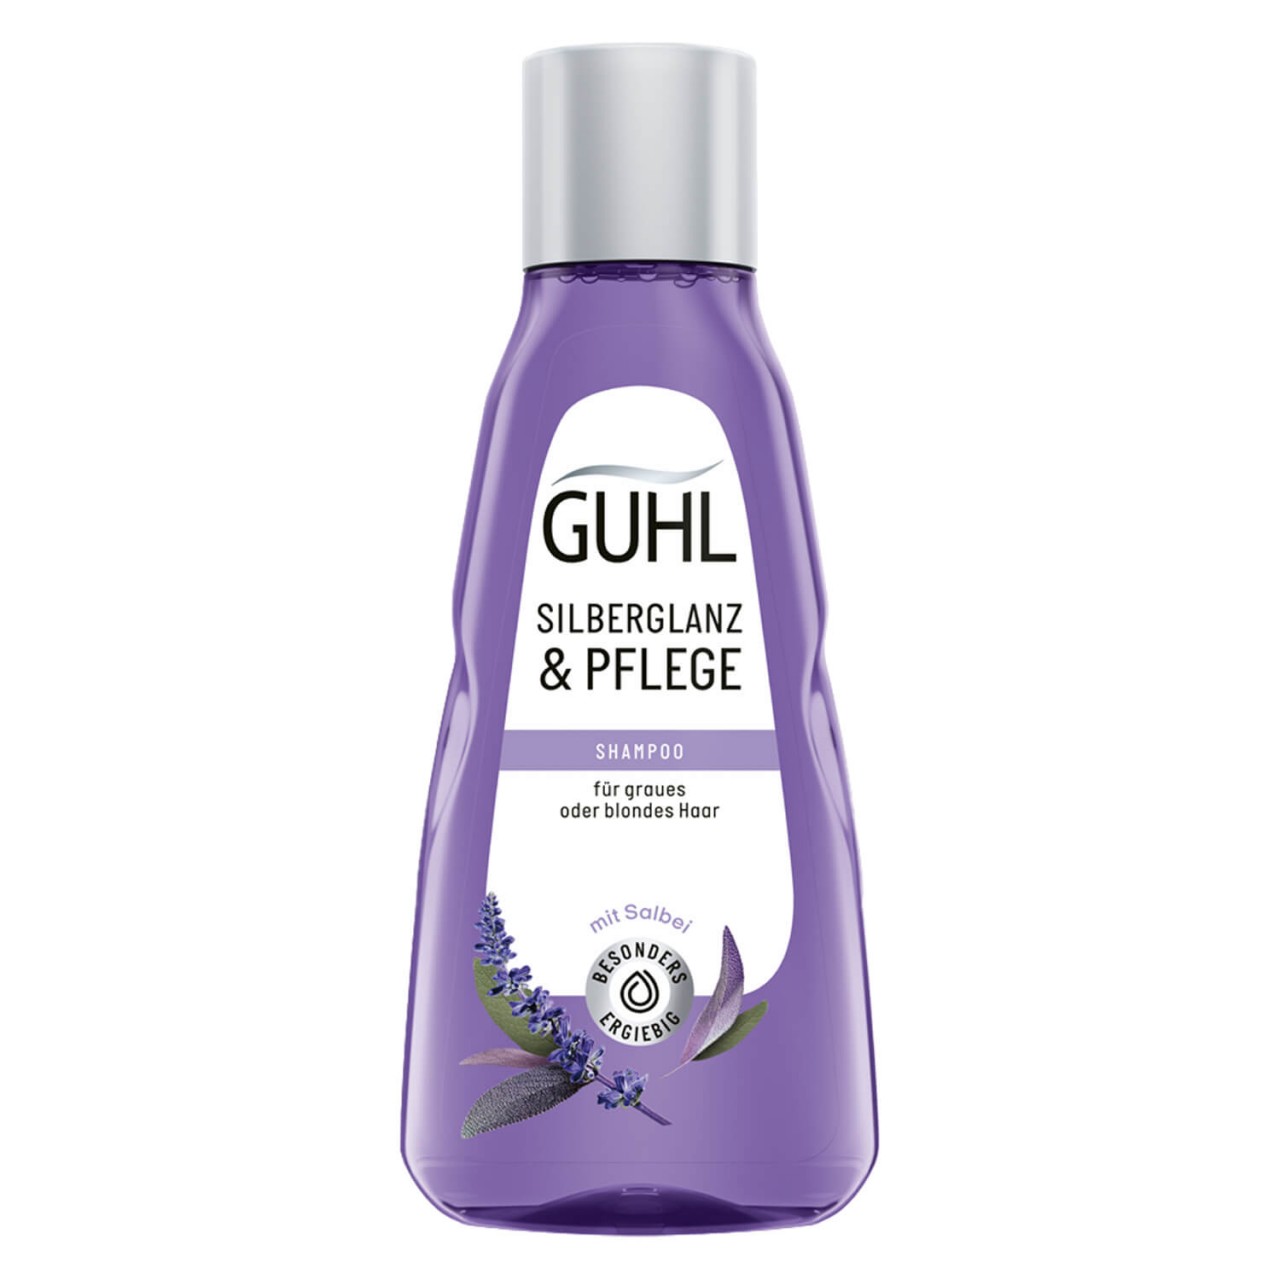 GUHL - SILBERGLANZ & PFLEGE Shampoo von GUHL